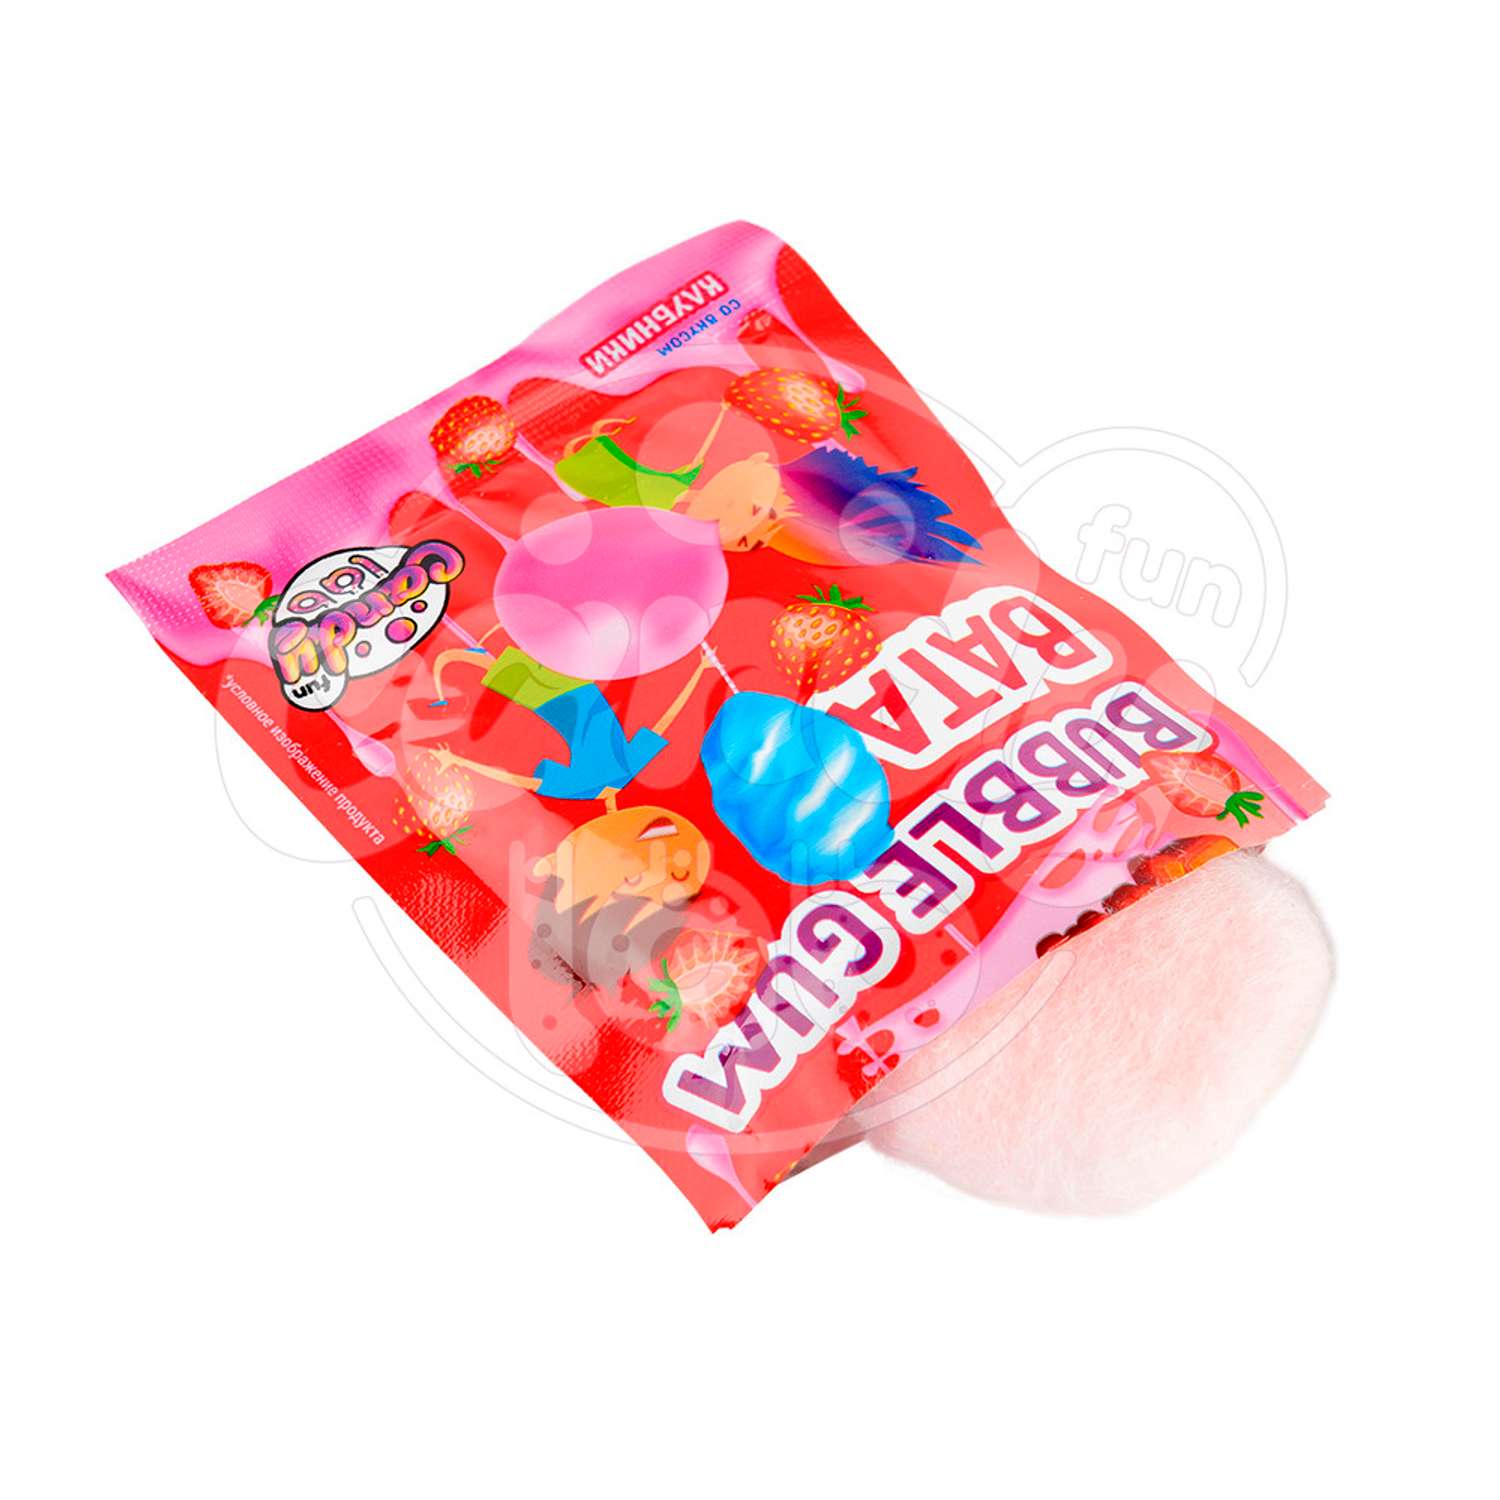 Жевательная резинка Fun Candy Lab ассорти вкусов Дуй пузырь! Bubble gum 24 шт по 5 грамм - фото 7